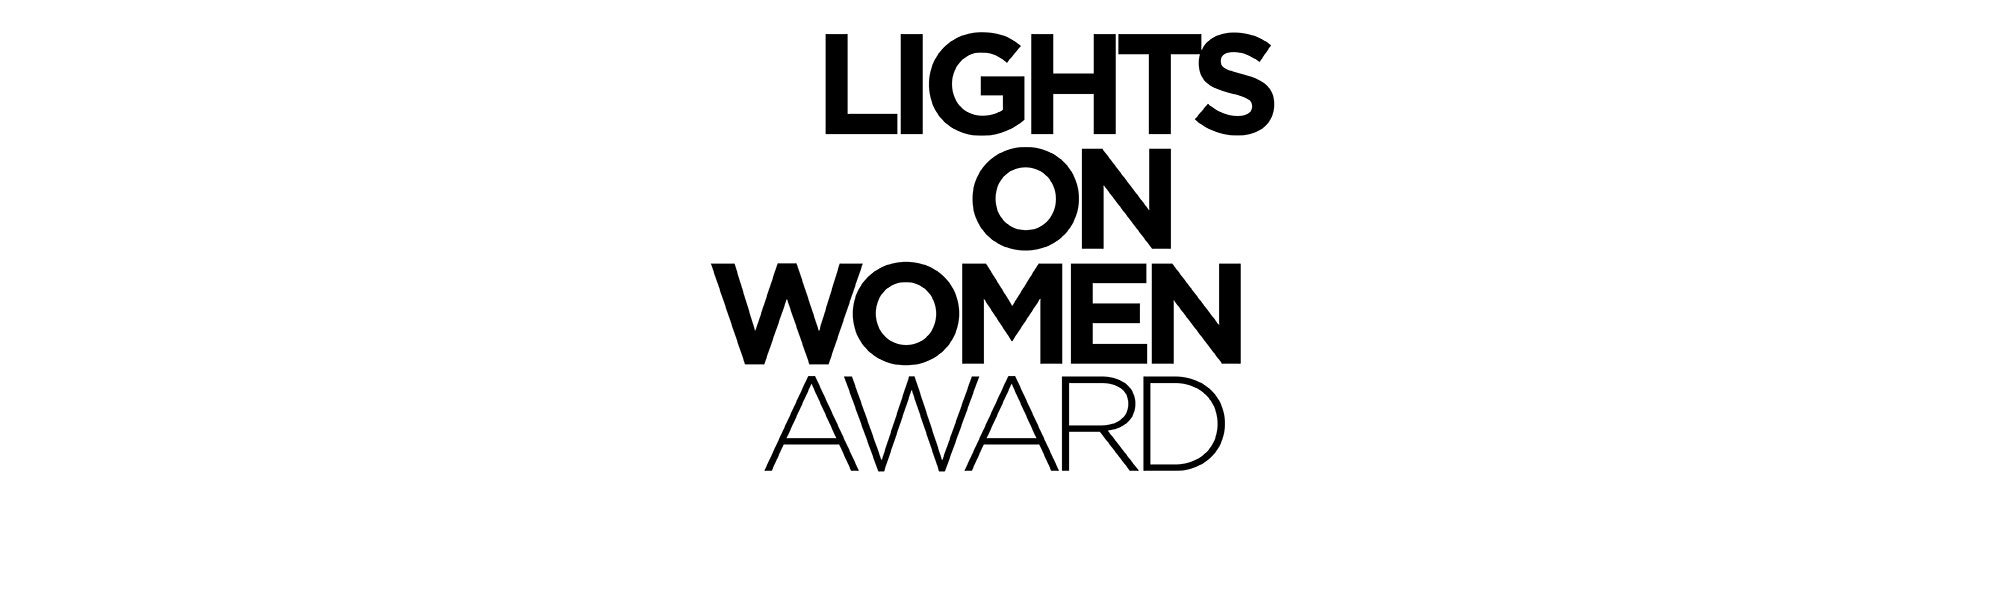 L’Oréal Paris entrega en la 74ª edición del Festival de cine de Cannes el premio Lights on Women Award. Un reconocimiento destinado a directoras de cortometraje y concebido para impulsar a las mujeres dentro de la industria cinematográfica.